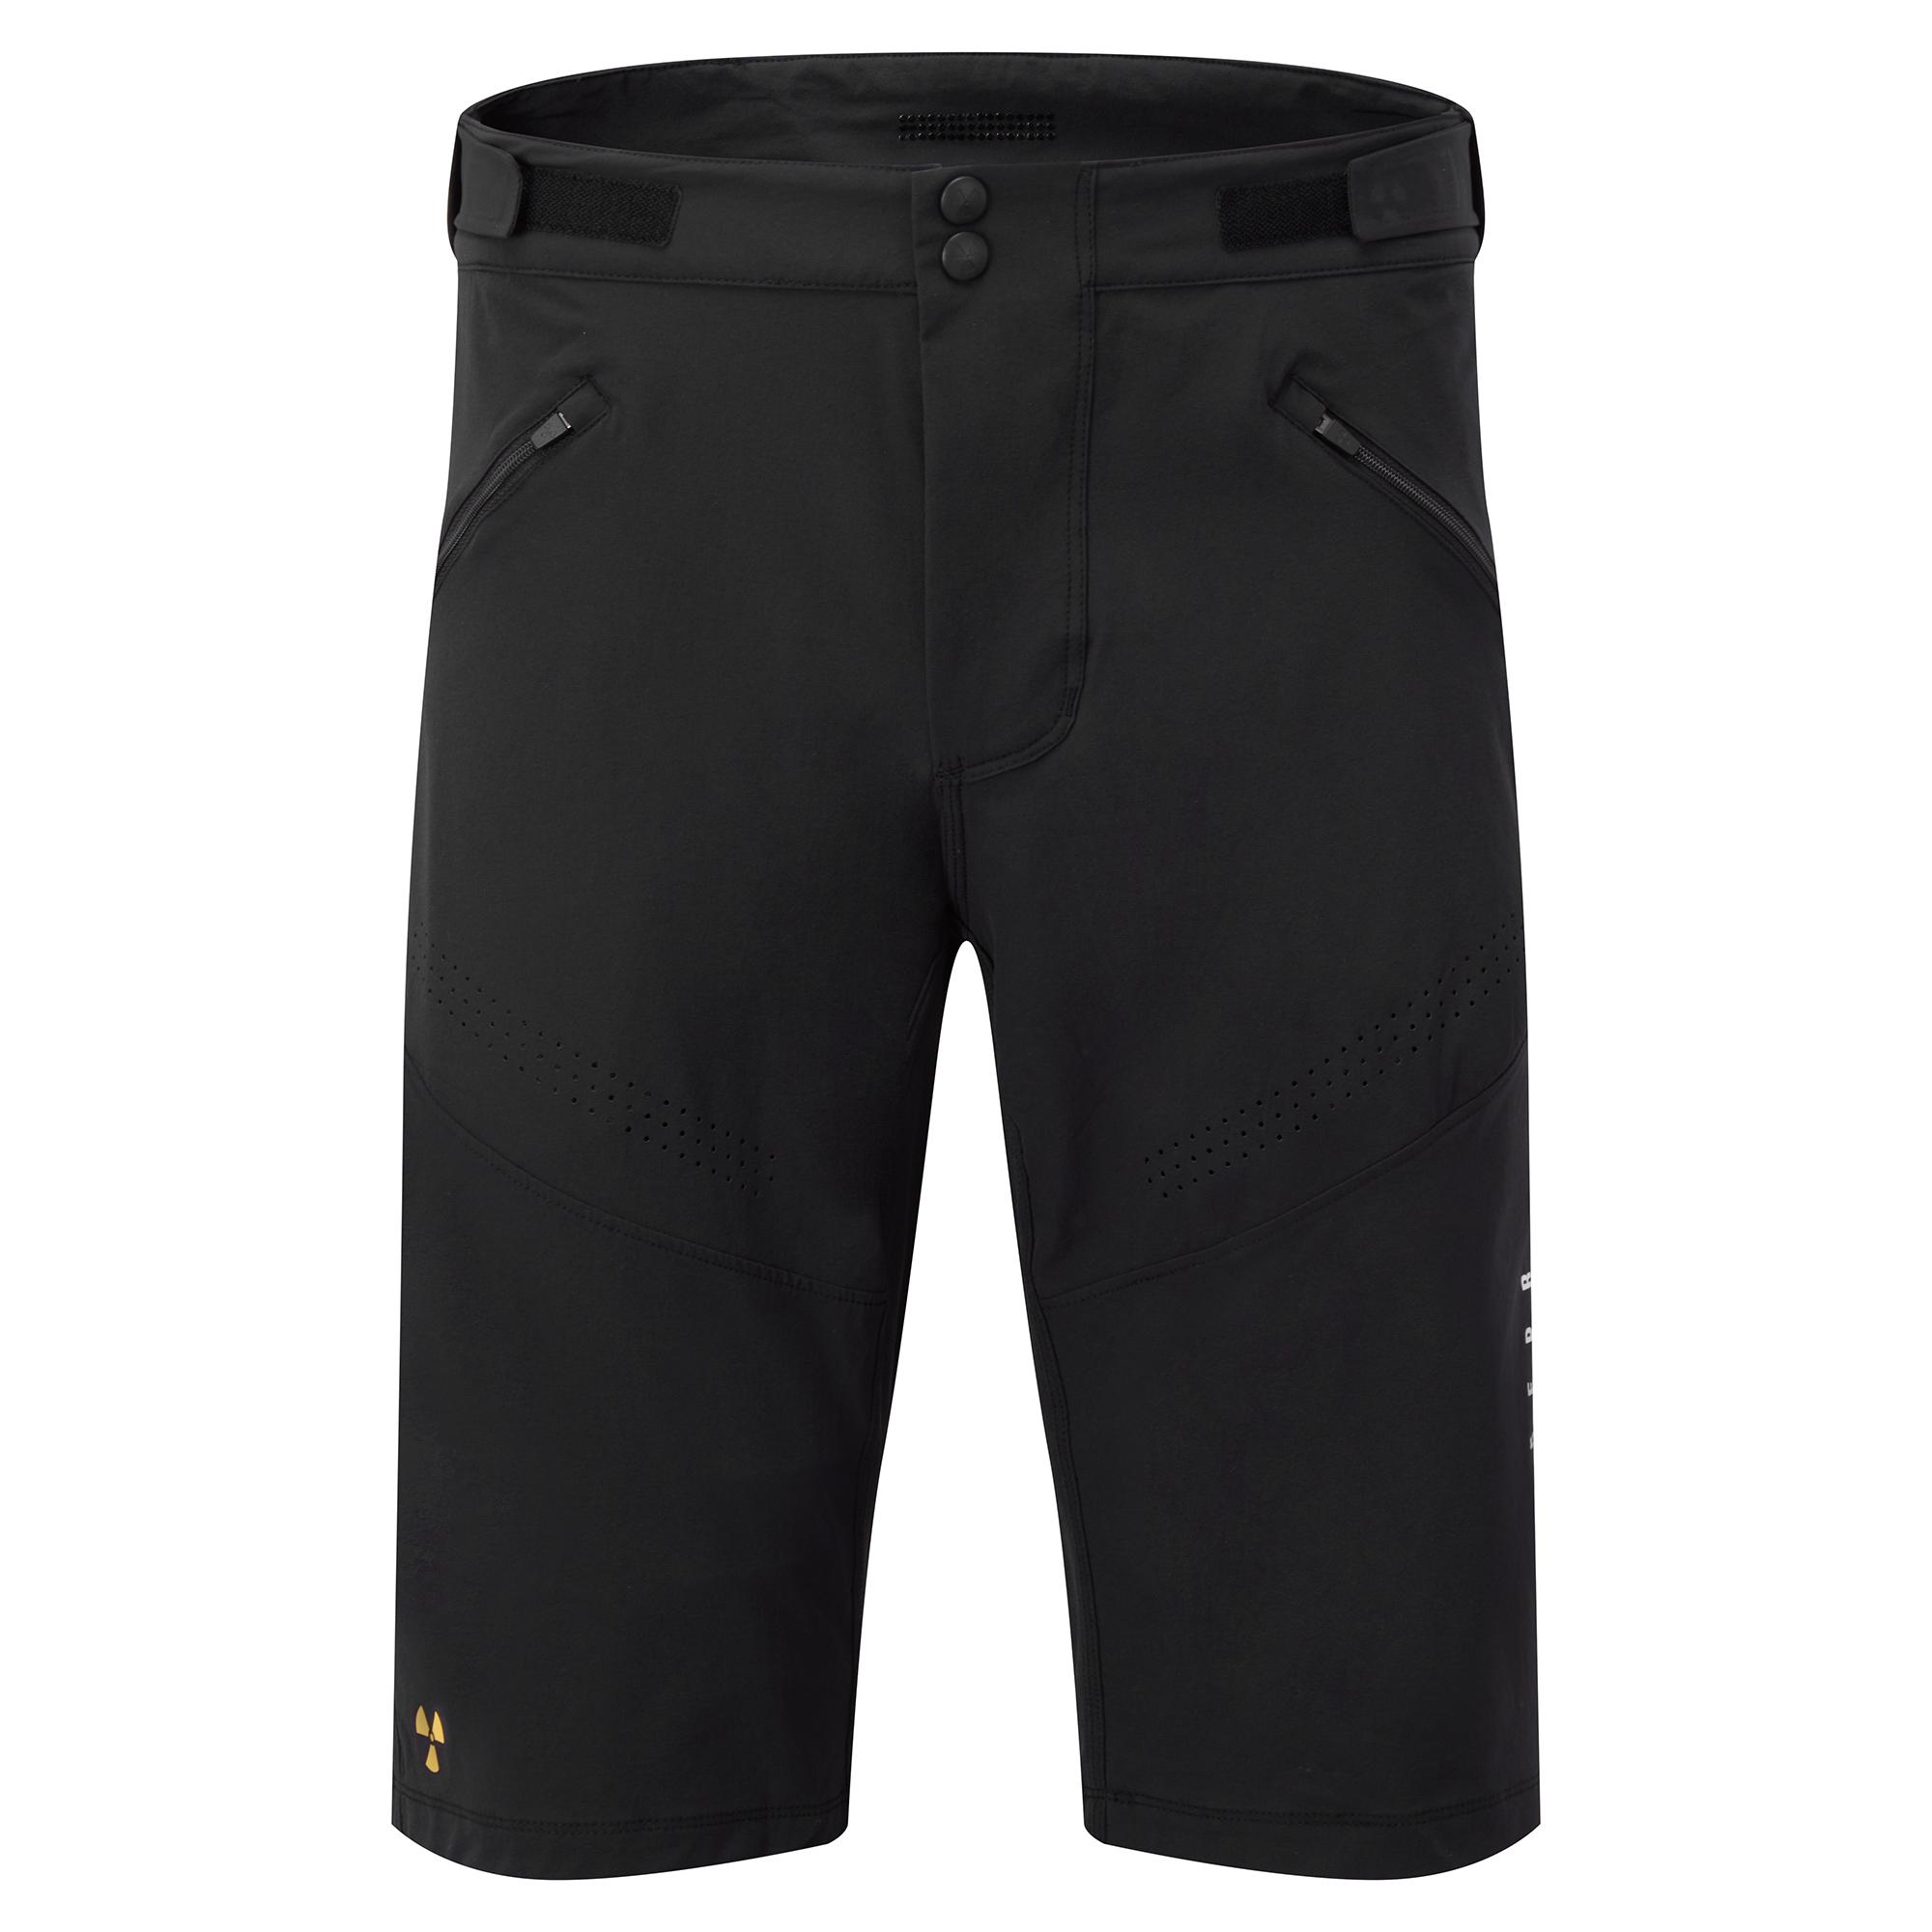 Nukeproof Blackline Mens Shorts With Liner  Black